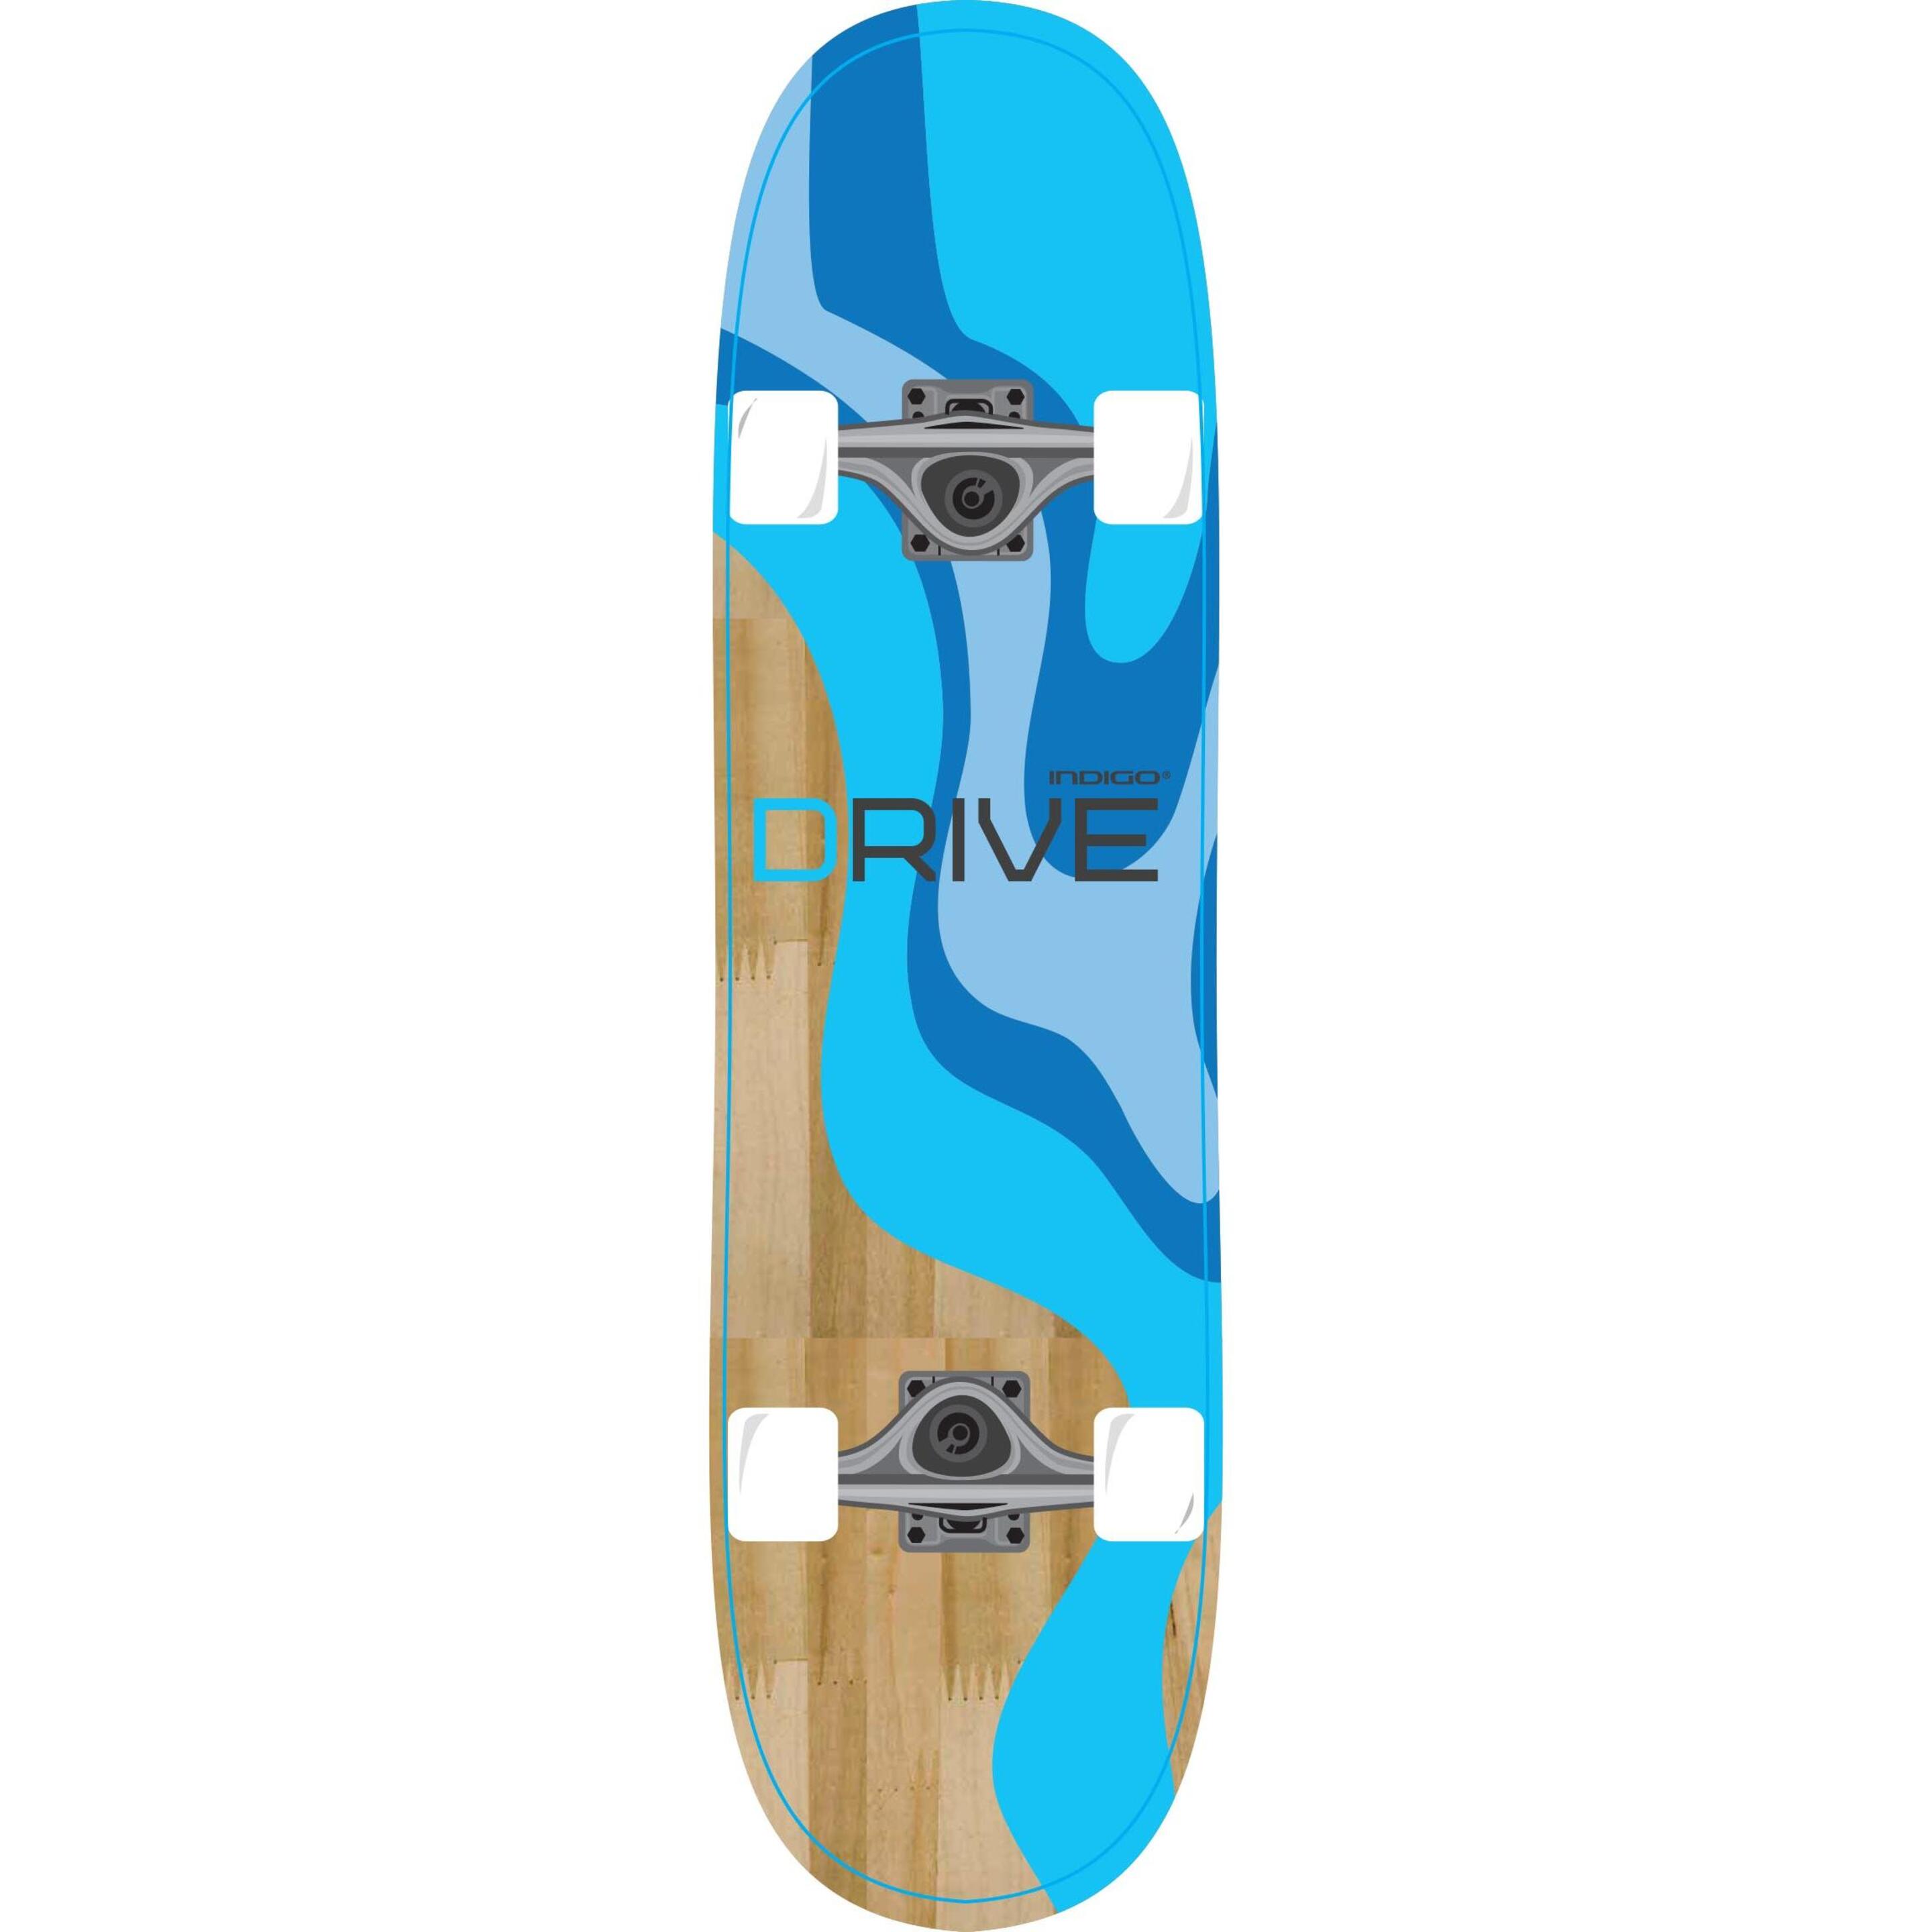 Skateboard Drive Indigo 78.74 * 20.32 Cm - Azul  MKP